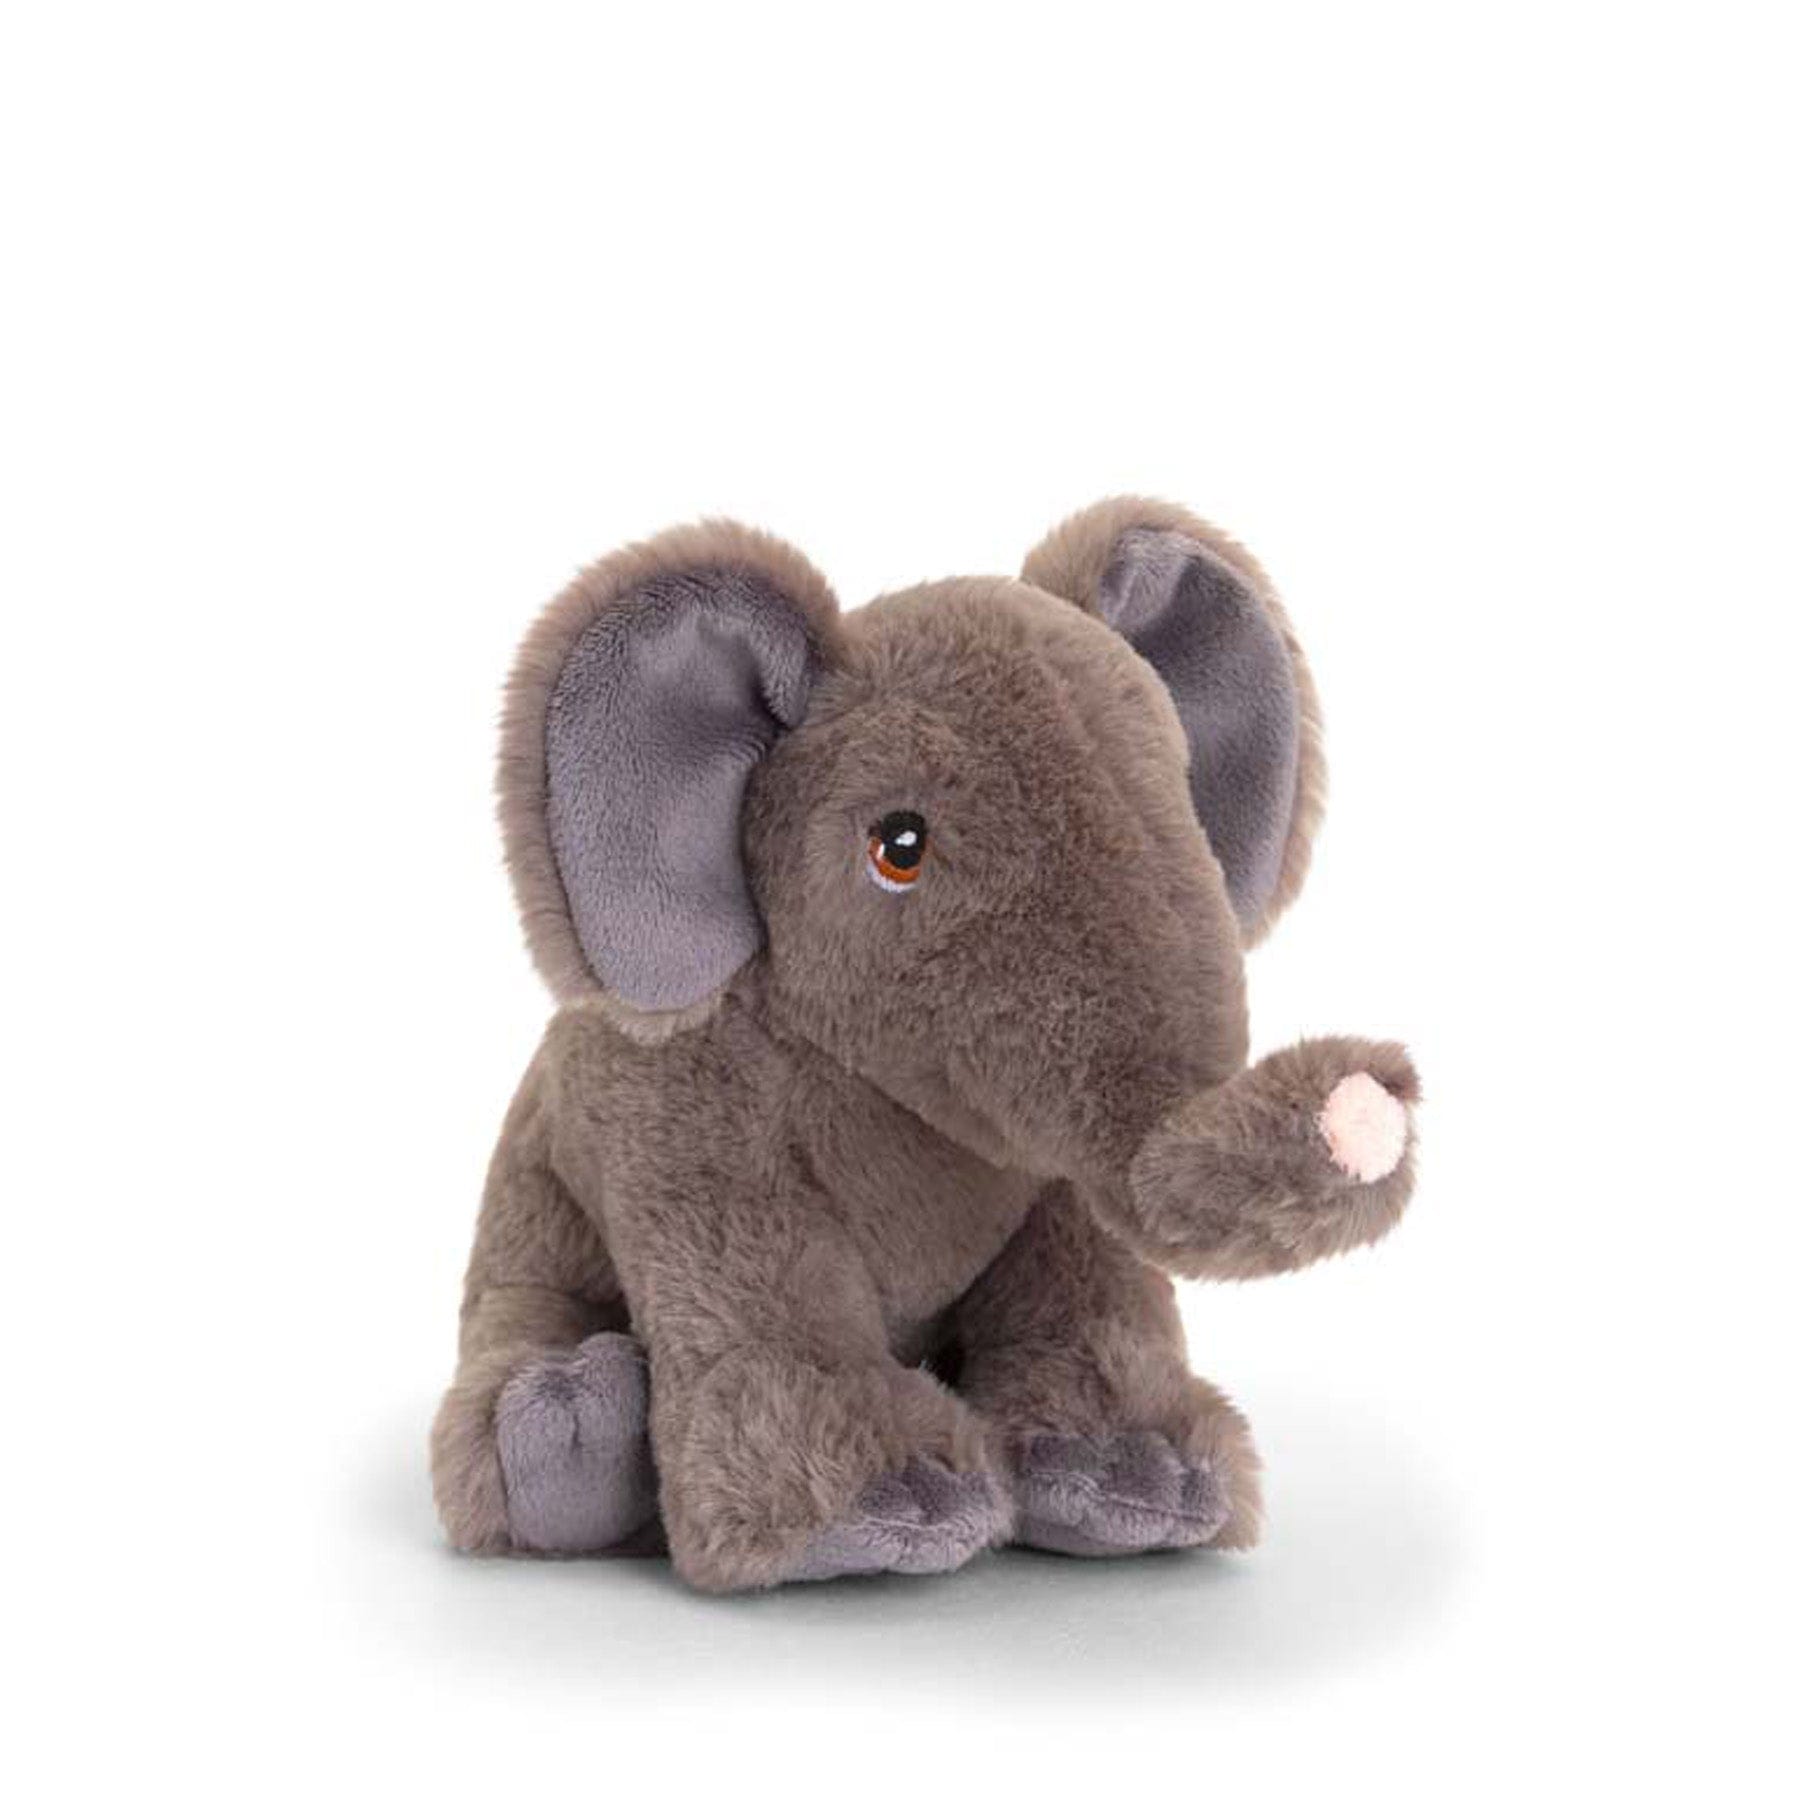 Plush elephant toy sitting on white background, cute stuffed animal, grey soft elephant for children, isolated plushie